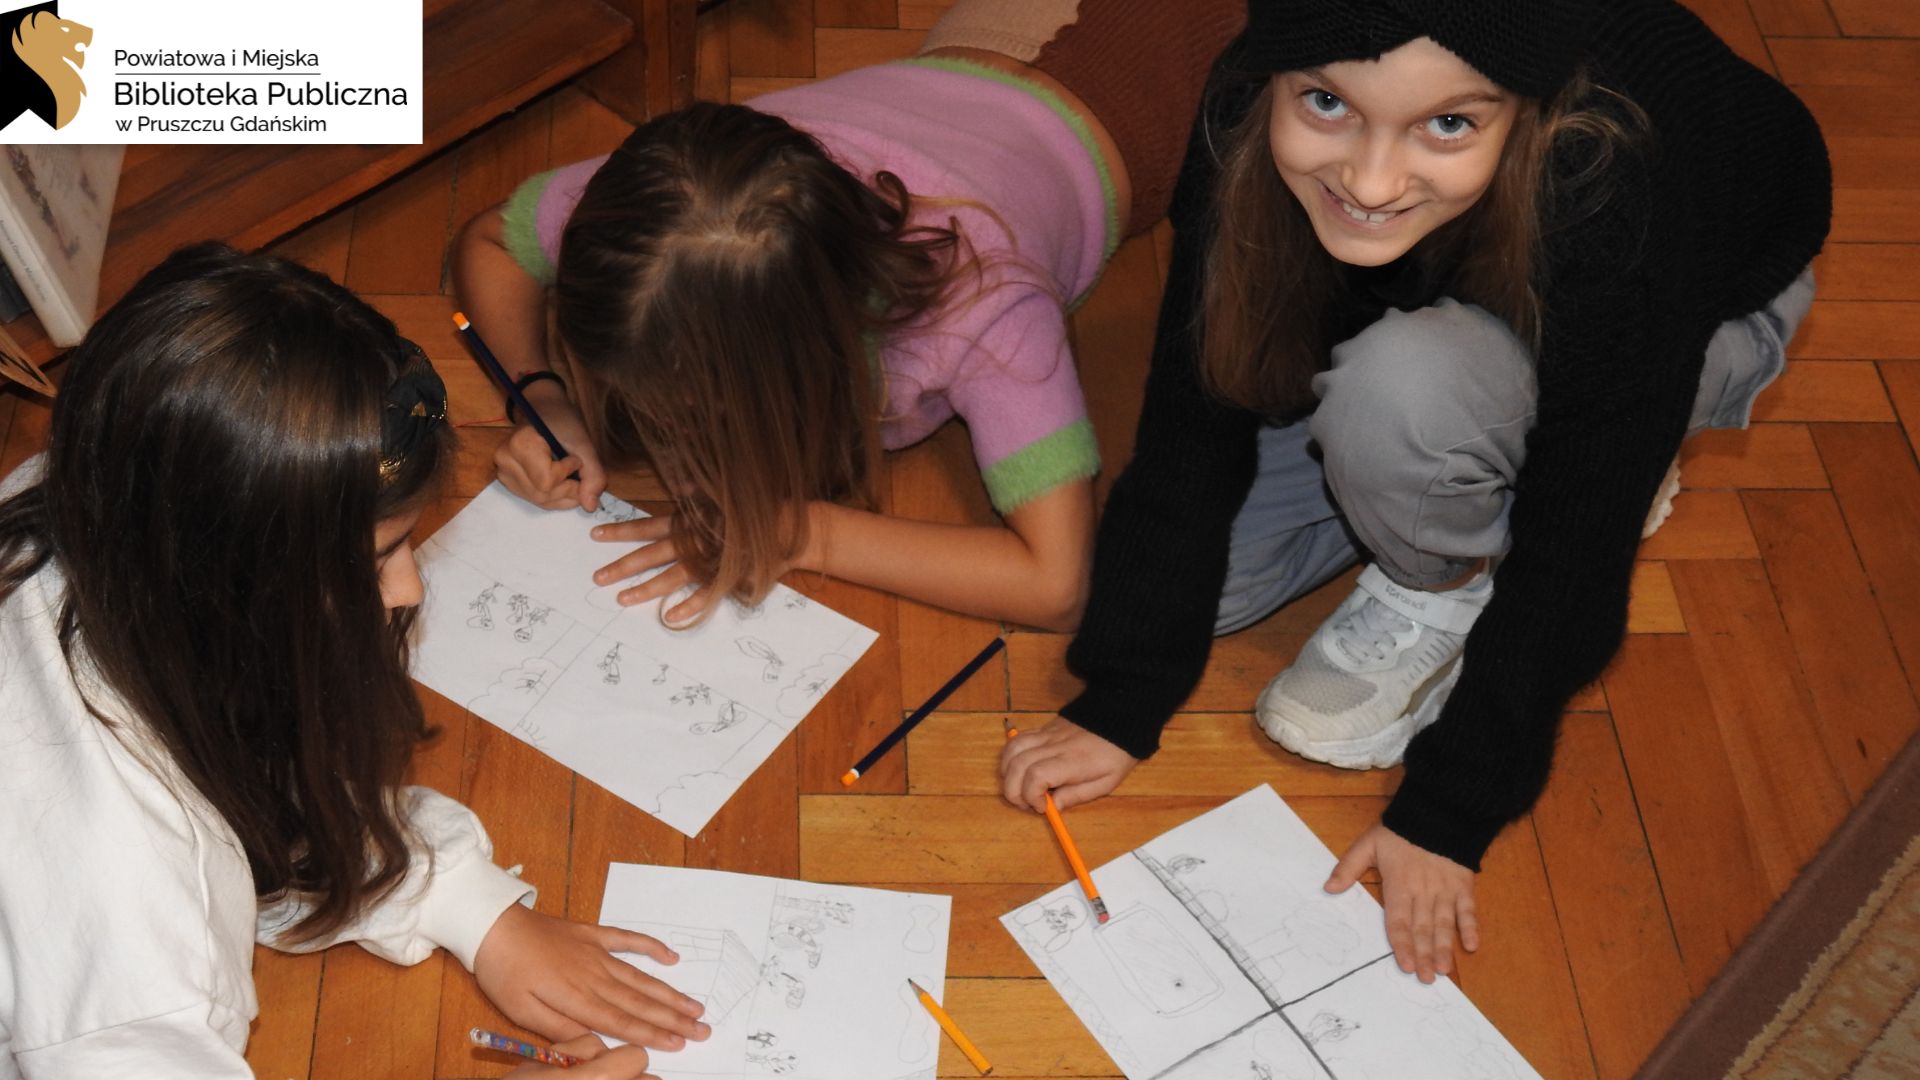 Dwie dziewczynki leżą, a jedna klęczy na podłodze. Przed nimi znajdują się kartki A4 z czarno-białymi szkicami. Dziewczynki trzymają ołówki. Dwie z nich są w trakcie rysowania, a jedna patrzy w górę i uśmiecha się.